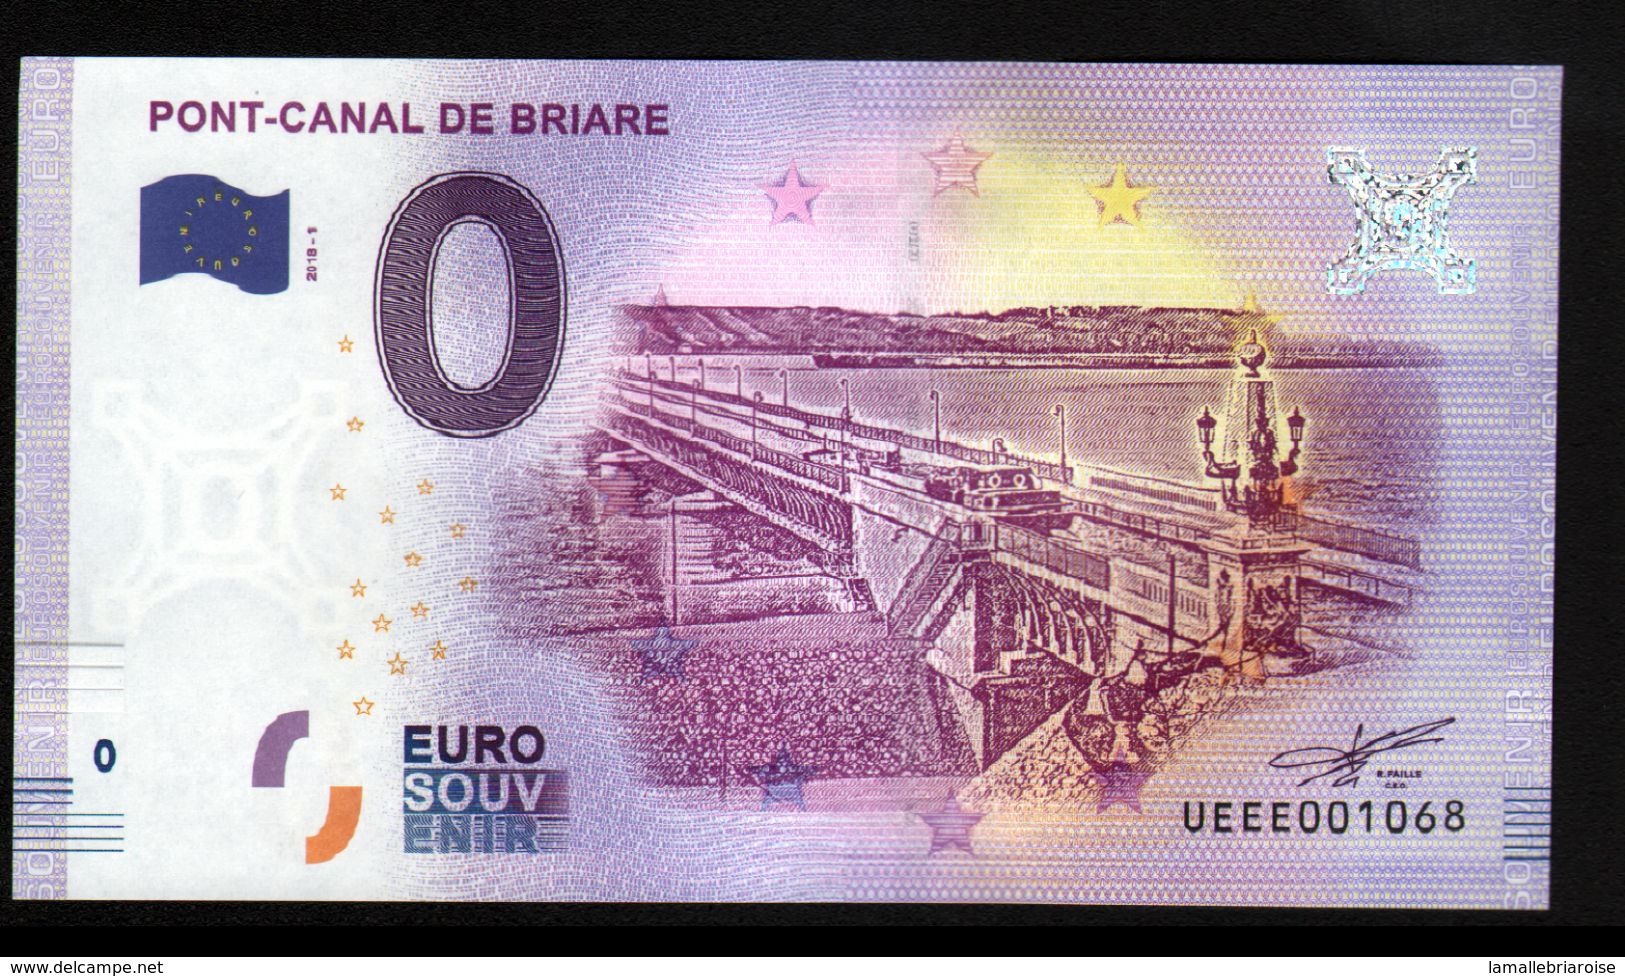 France - Billet Touristique 0 Euro 2018 N°1068 (UEEE001068/5000) - PONT-CANAL DE BRIARE - Essais Privés / Non-officiels